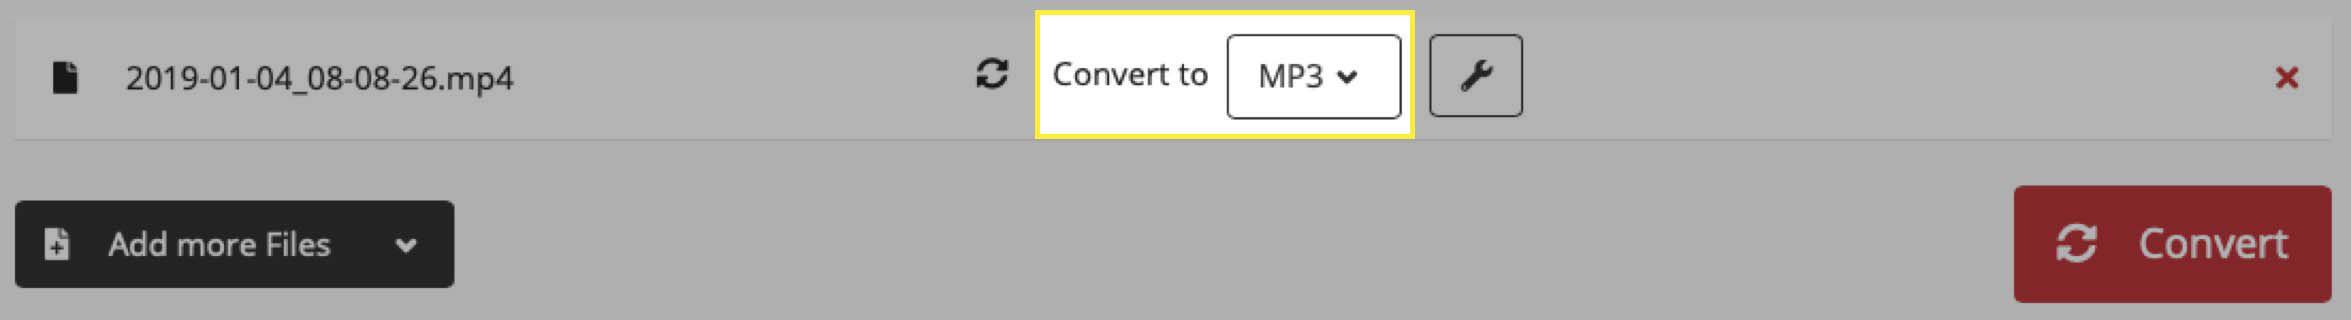 Potvrďte formát souboru MP3 na webu Cloud Convert.